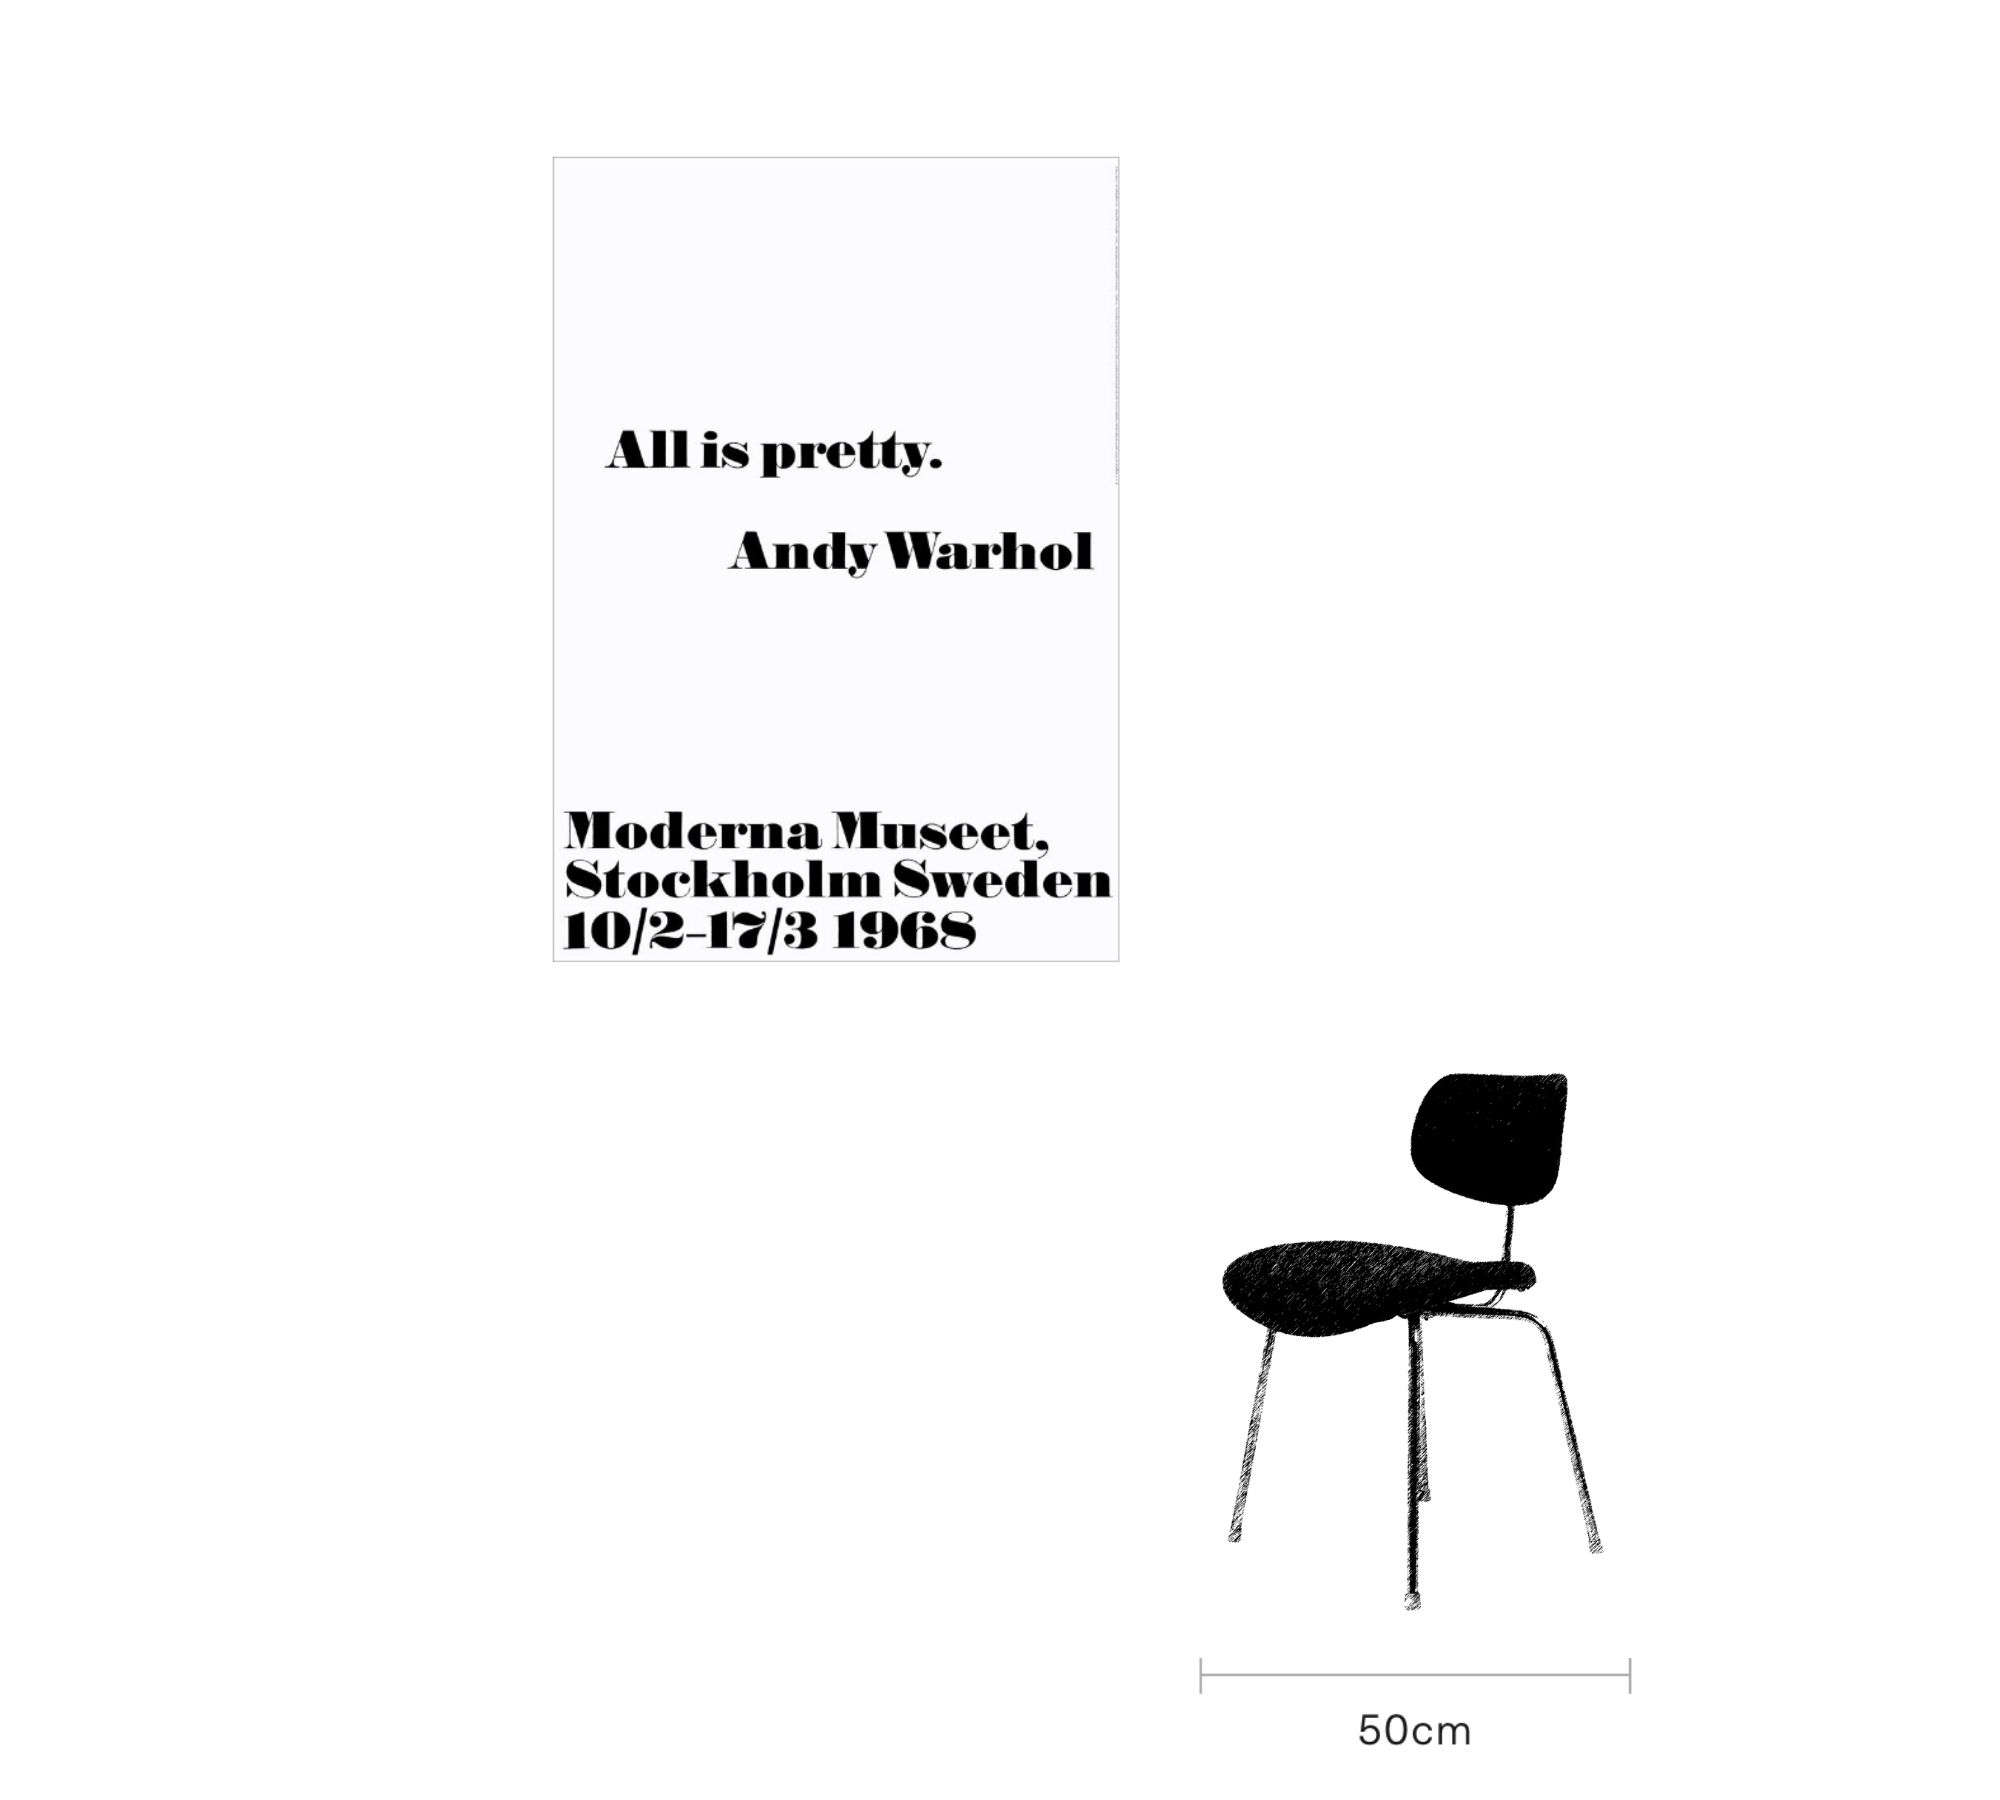 All is pretty - Andy Warhol 70 x 100 cm